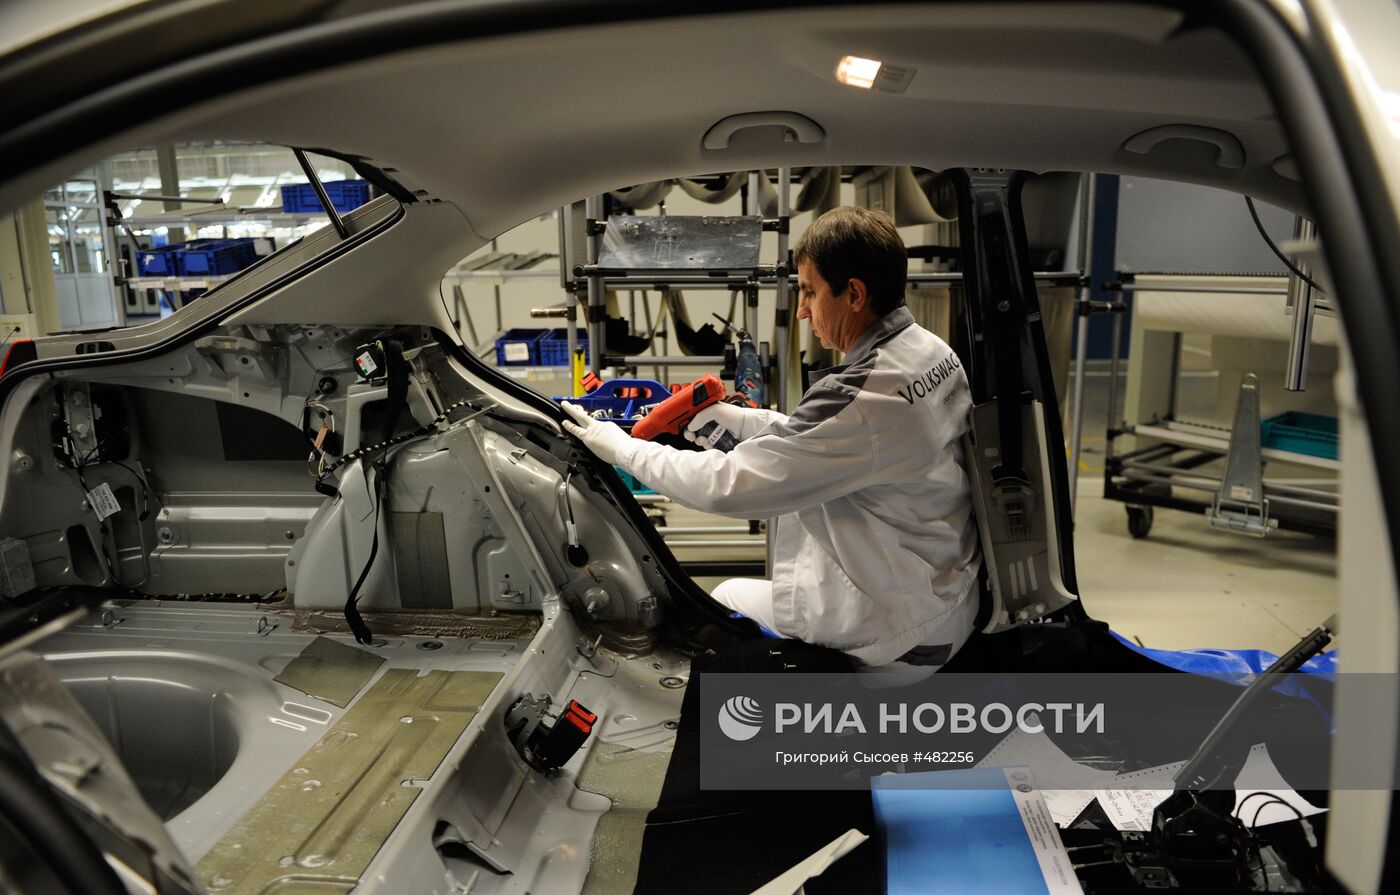 Запуск производства полного цикла на заводе Volkswagen Group Rus